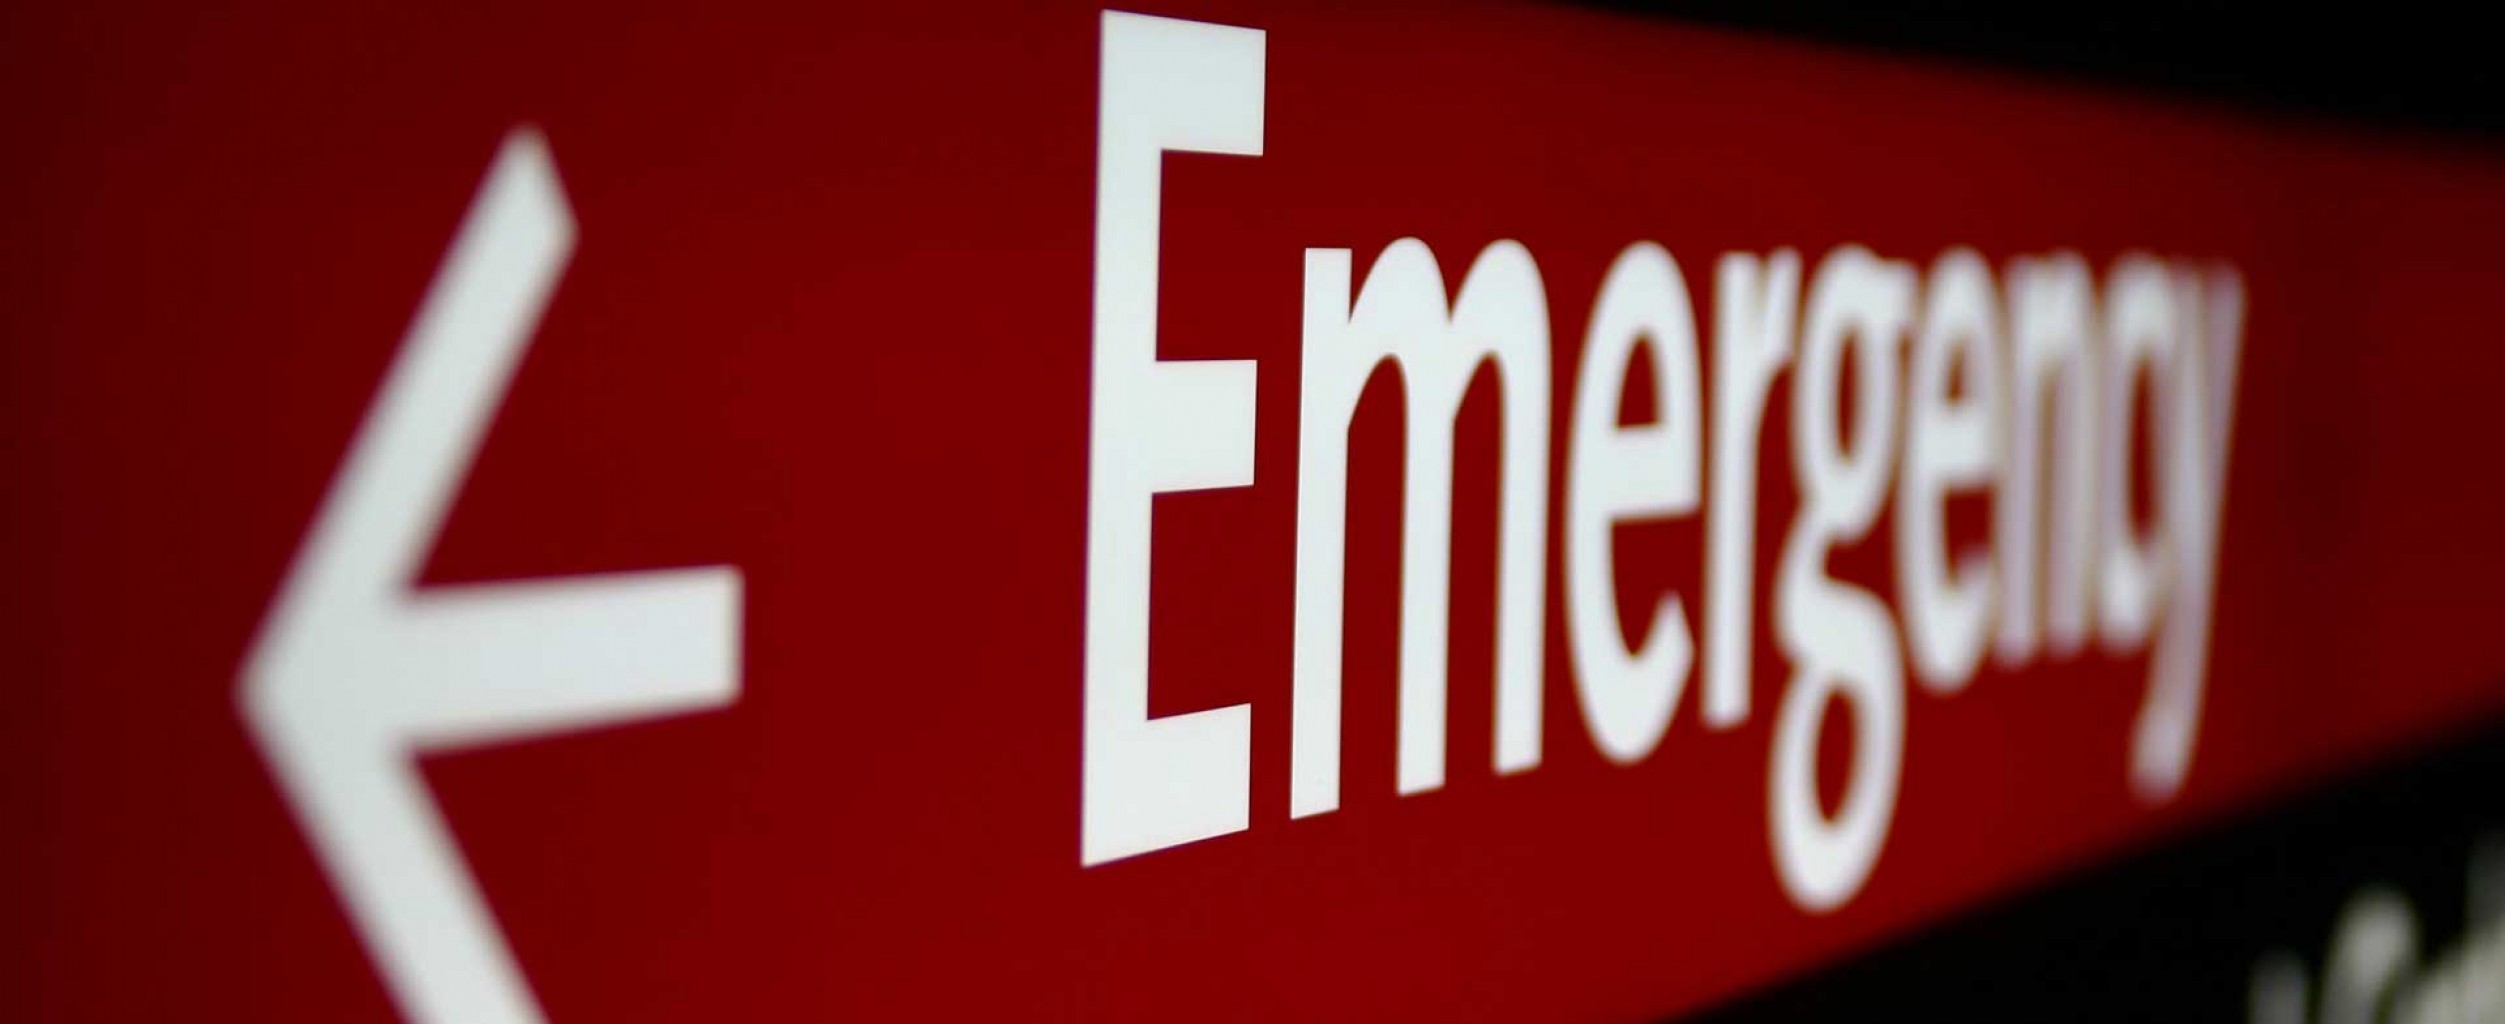 Cruz Roja entra en la tercera semana de escasez de sangre de emergencia